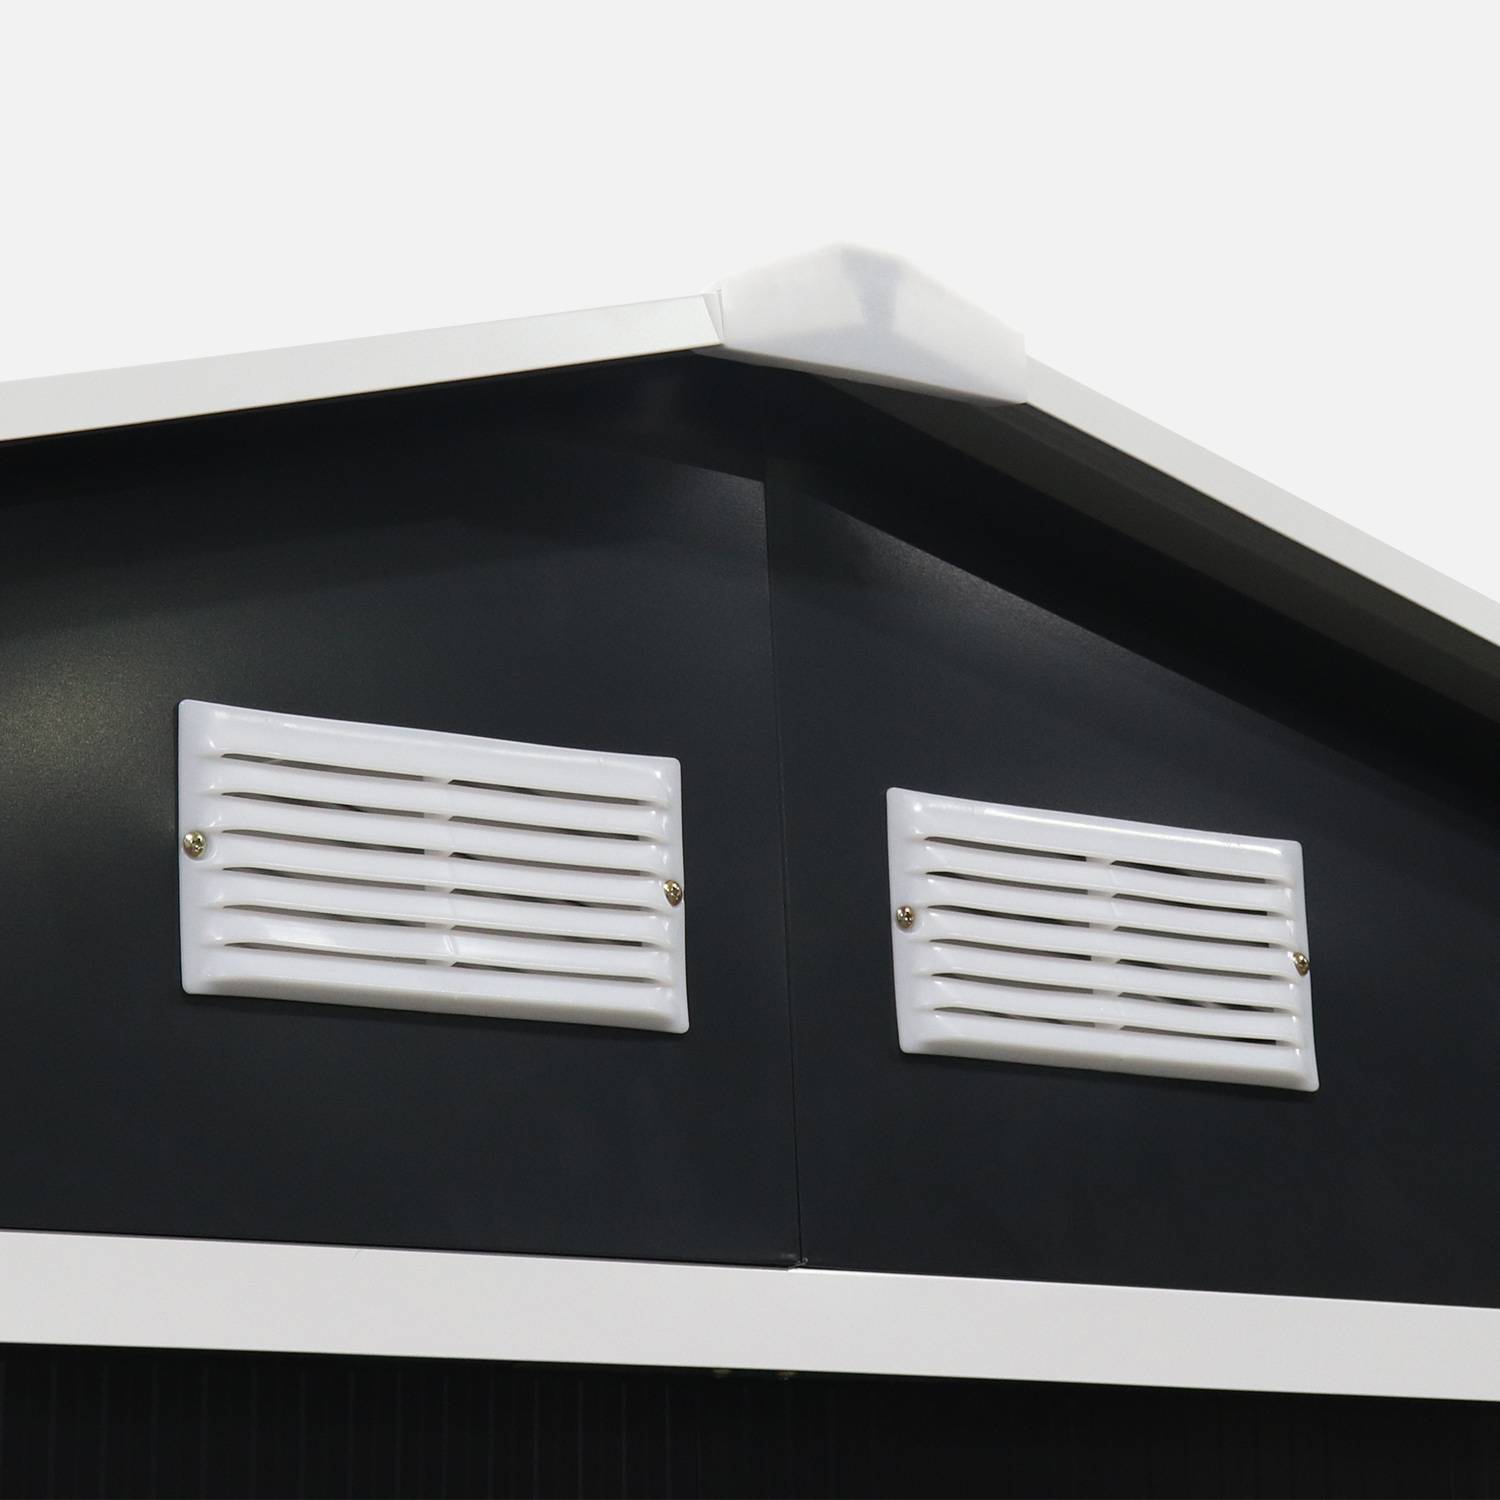 Galpão metálico - Calaisis - 7,06m² cinza antracite e branco - Galpão de ferramentas com duas portas deslizantes, kit de fixação incluído, galpão de arrumação, arrecadação Photo5